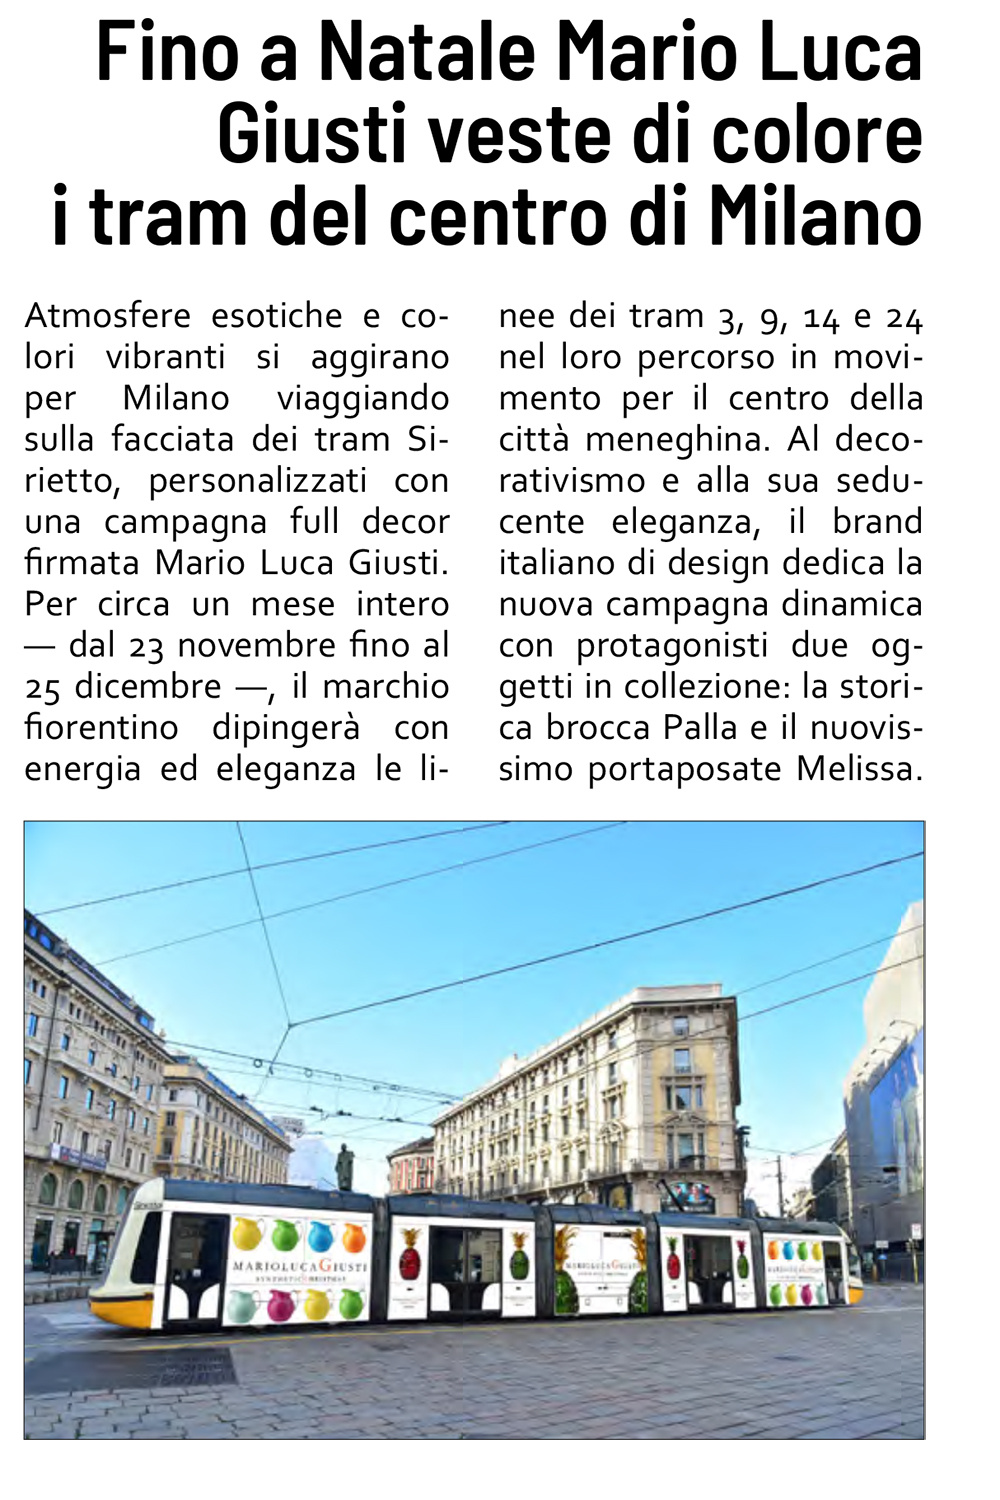 Fino a Natale Mario Luca Giusti veste di colore i tram del centro di Milano 